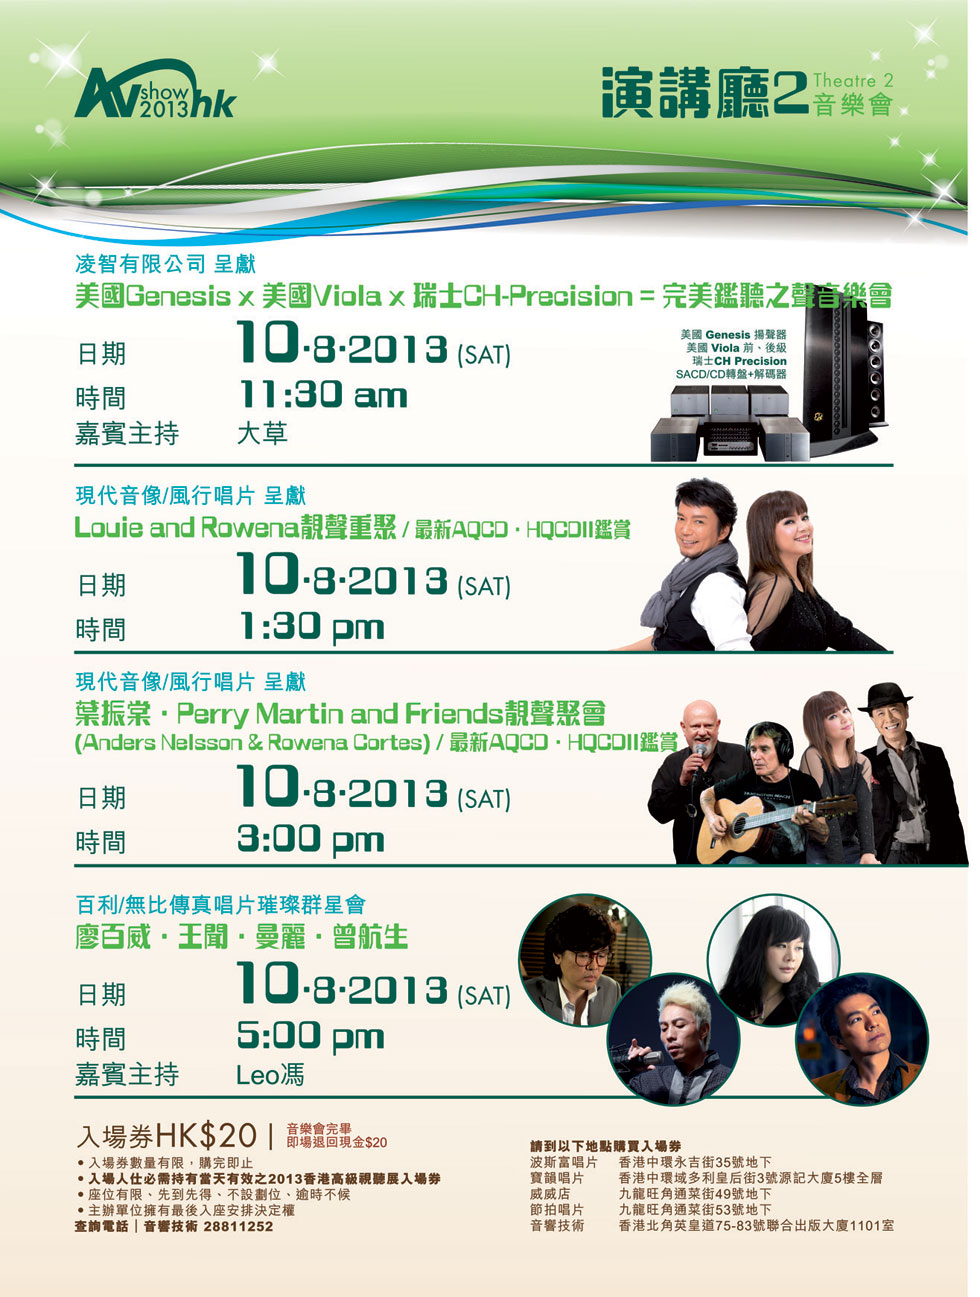 2013 香港高級視聽展 8 月 9-11 日香港會議展覽中心舉行